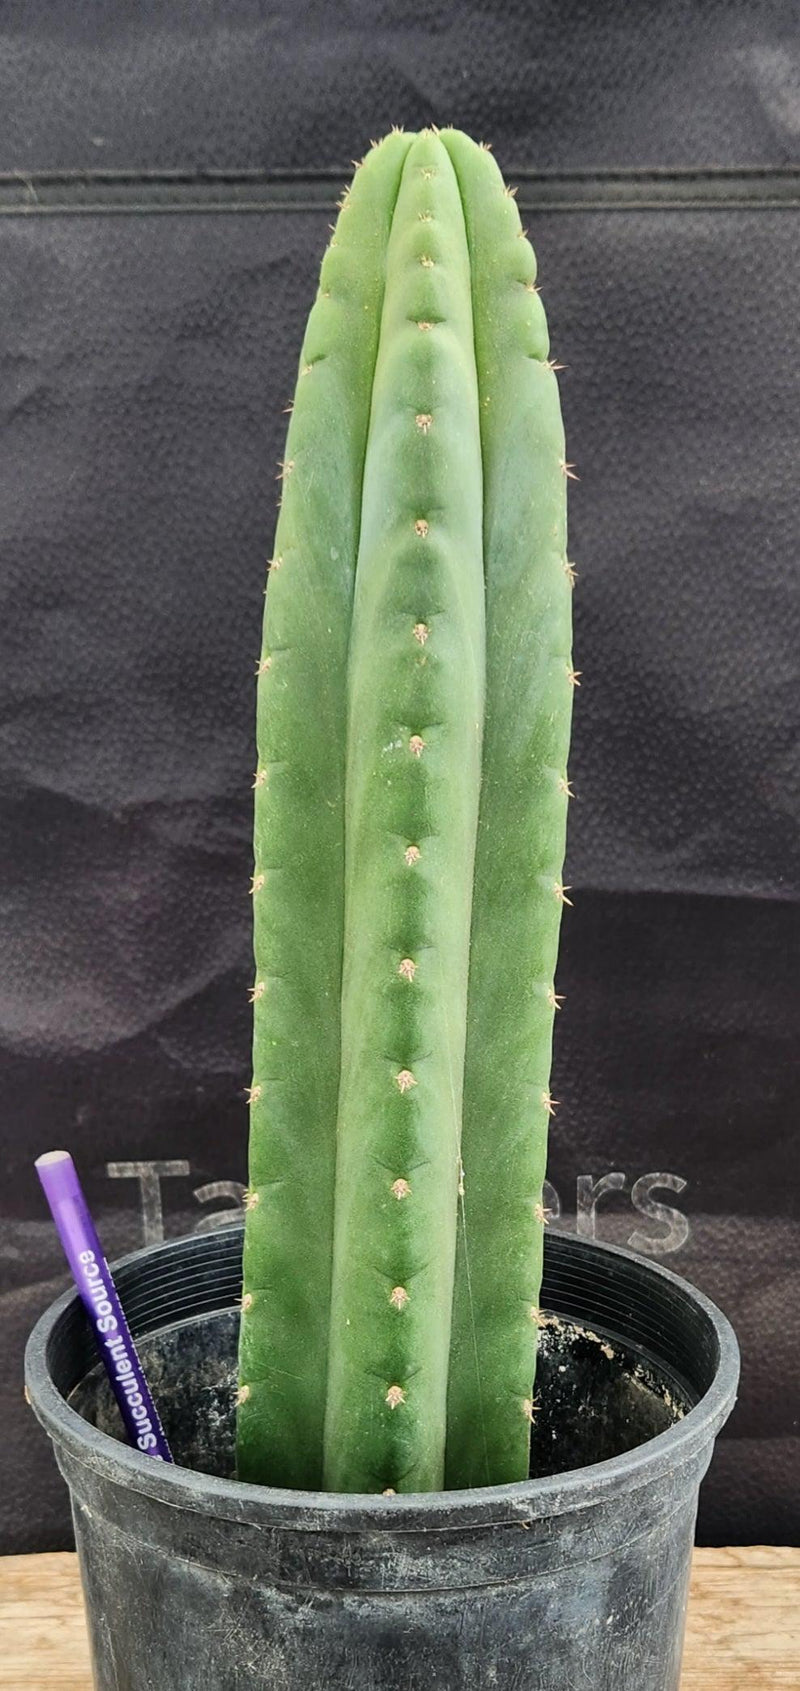 #EC161 EXACT Trichocereus Pachanoi  "Awful" Cactus 16”